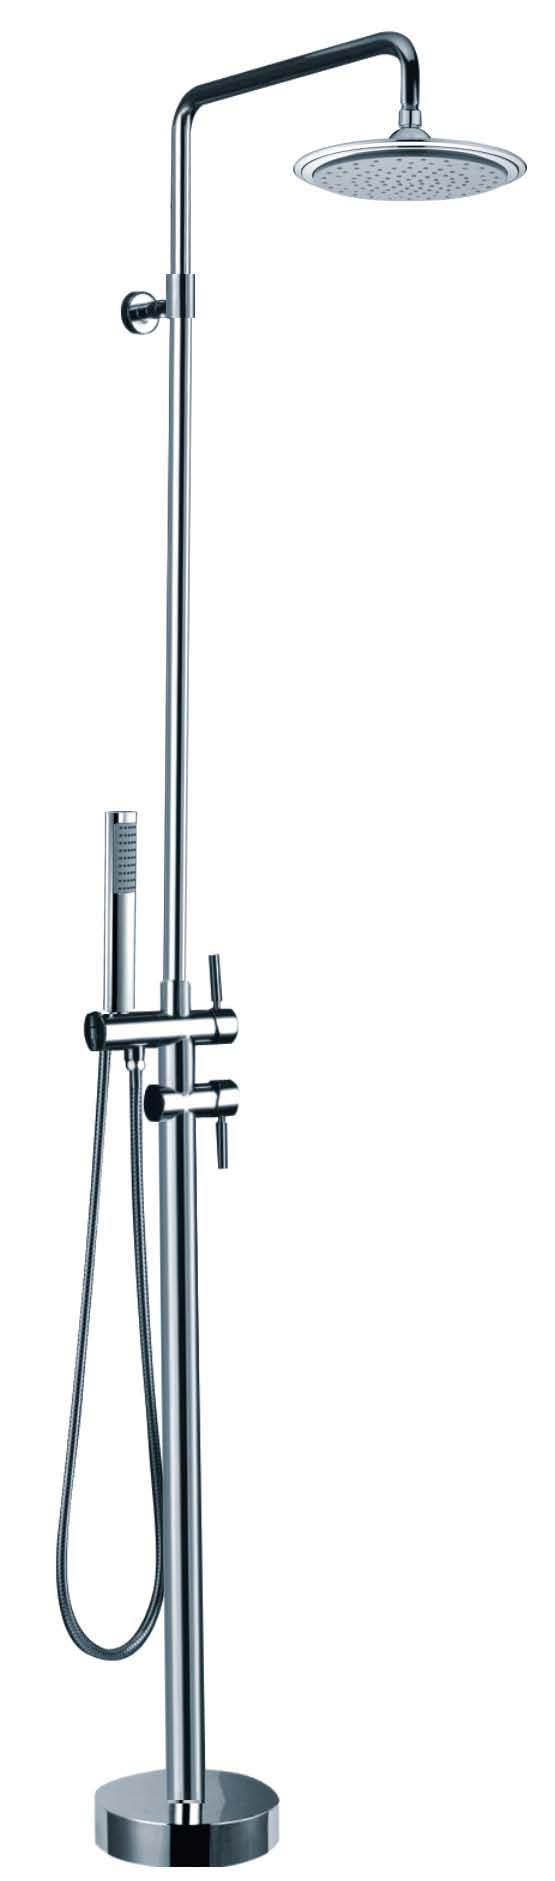 Floor Mounted Shower Set (BMJ-51002)